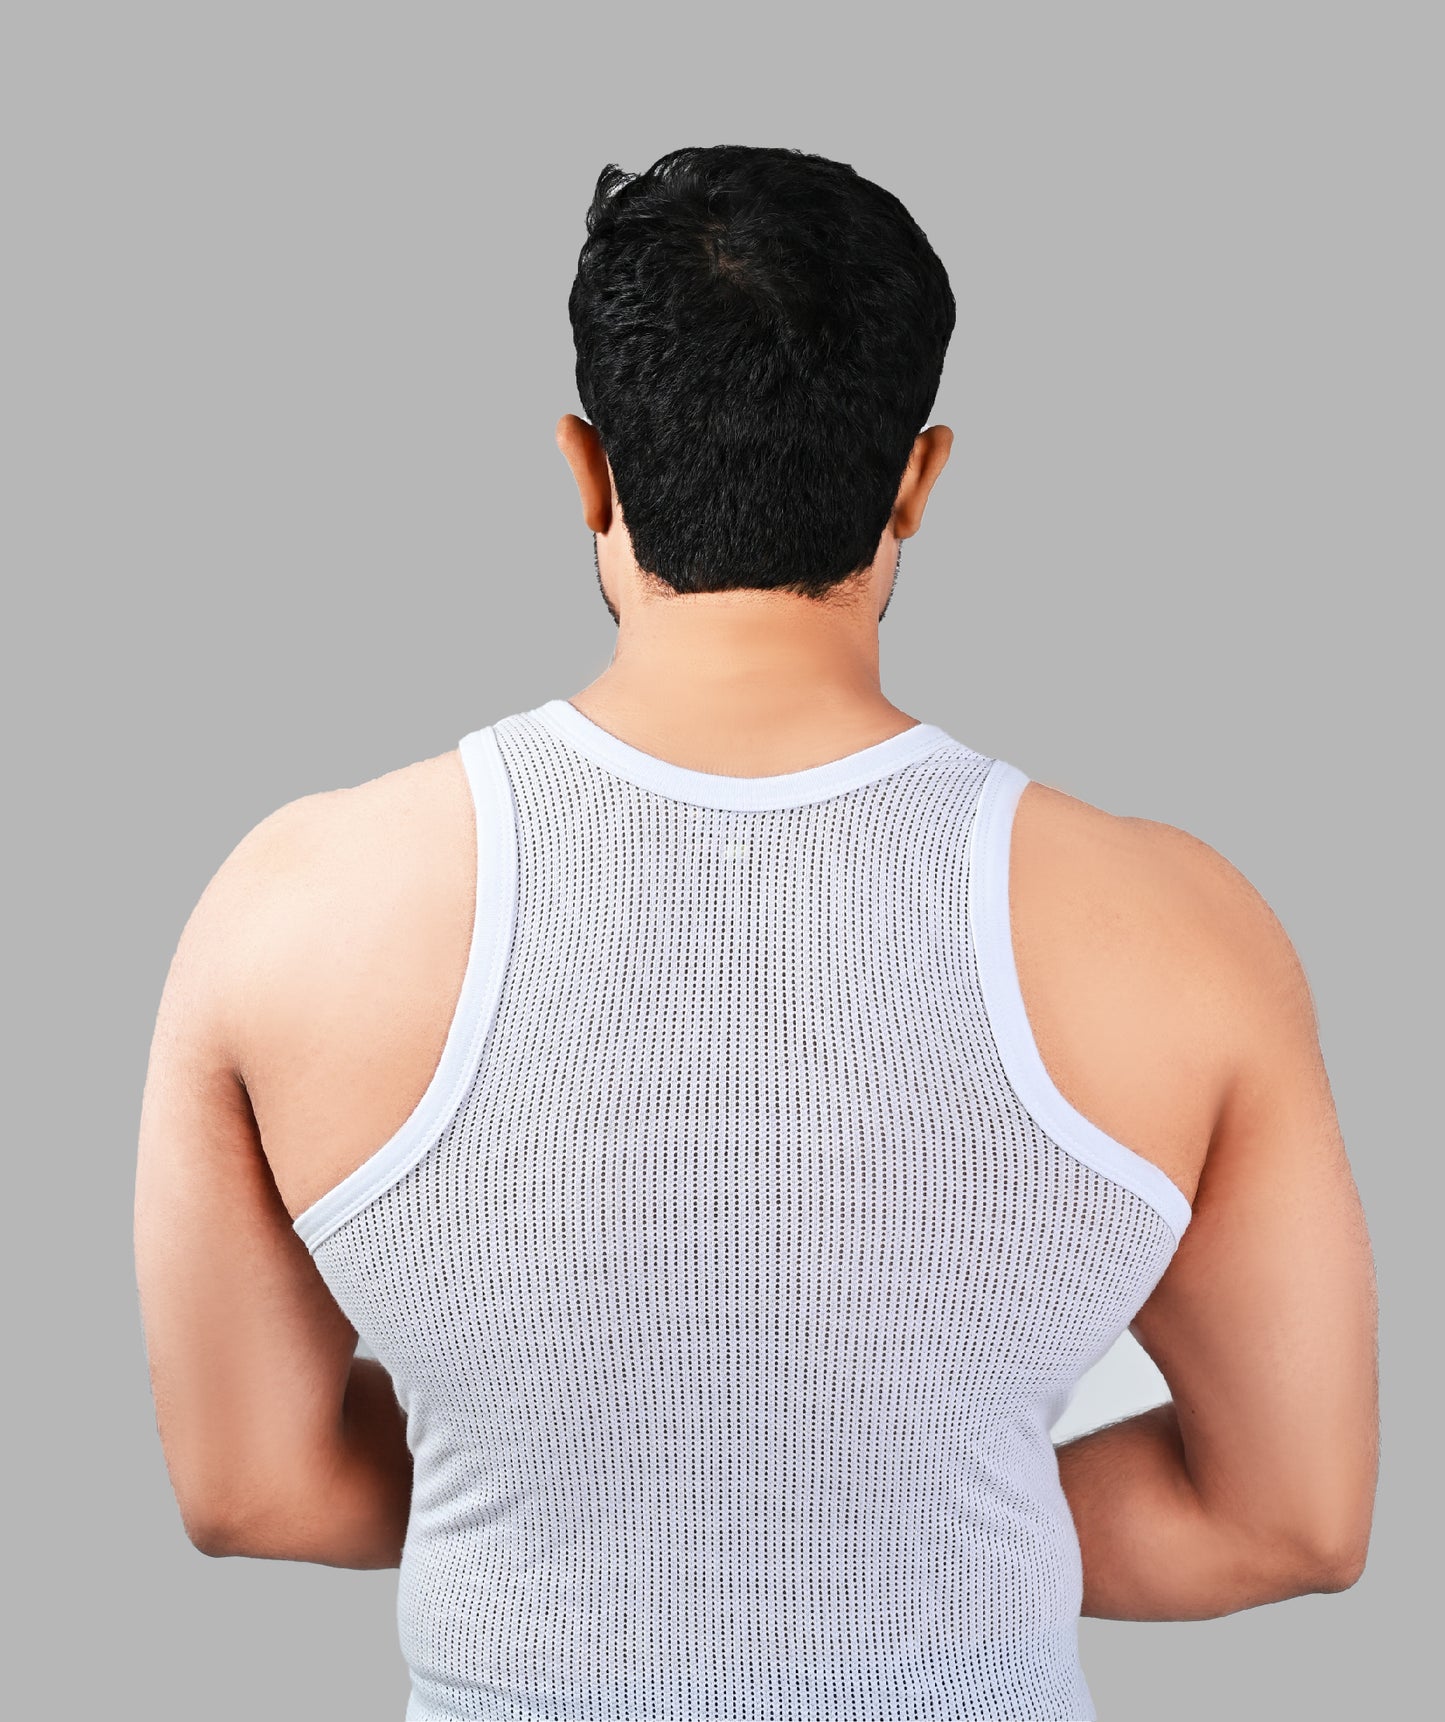 ARINO® Net Fabric Sleeveless Vest (Jali)